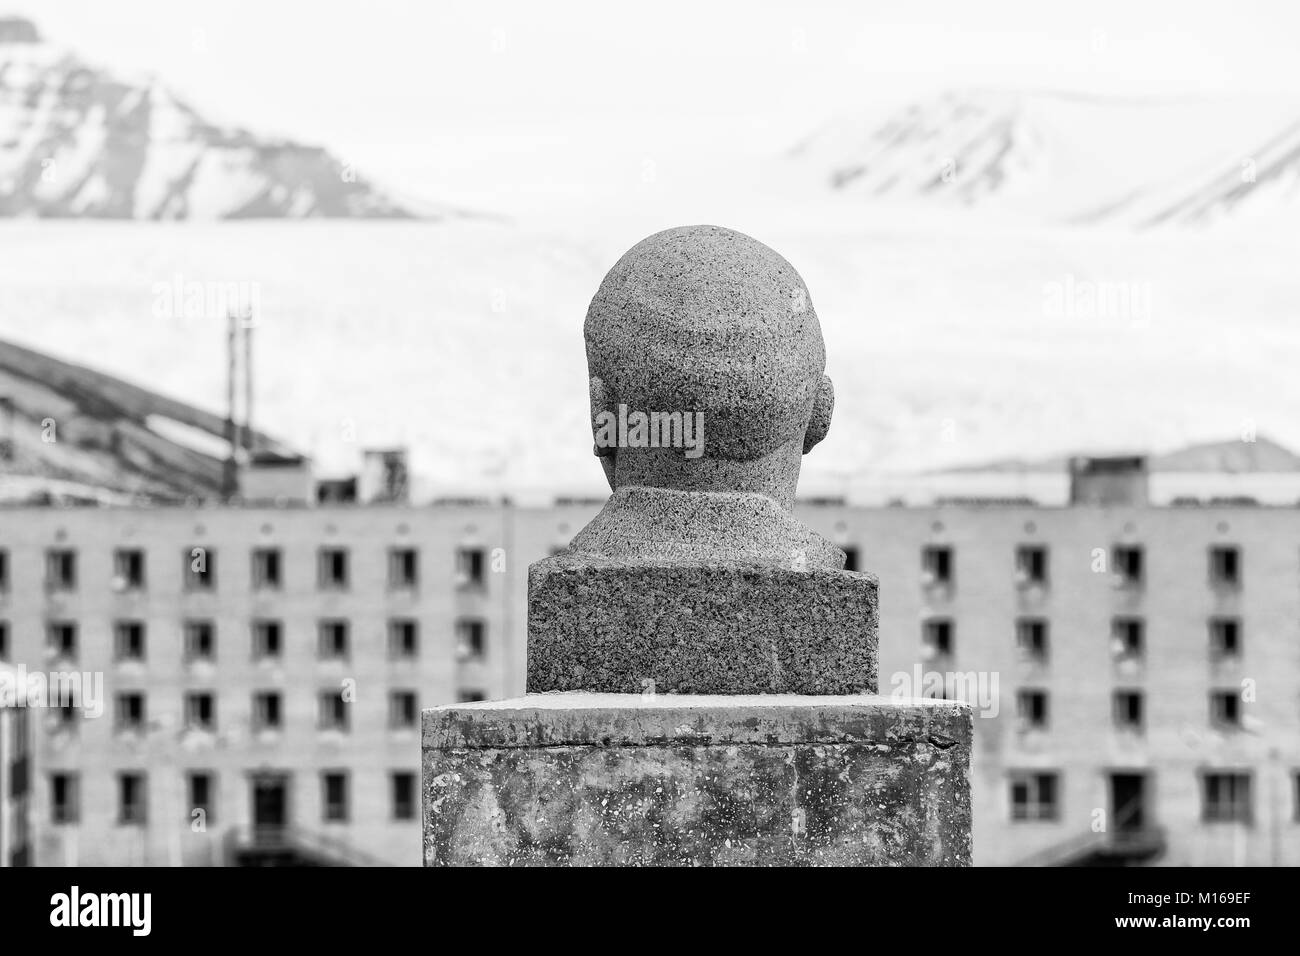 PYRAMIDEN, Norwegen - 25. Juni 2015 : Äußeres der Büste von Lenin an die verlassenen russischen Arktis Siedlung Pyramiden, Norwegen Stockfoto